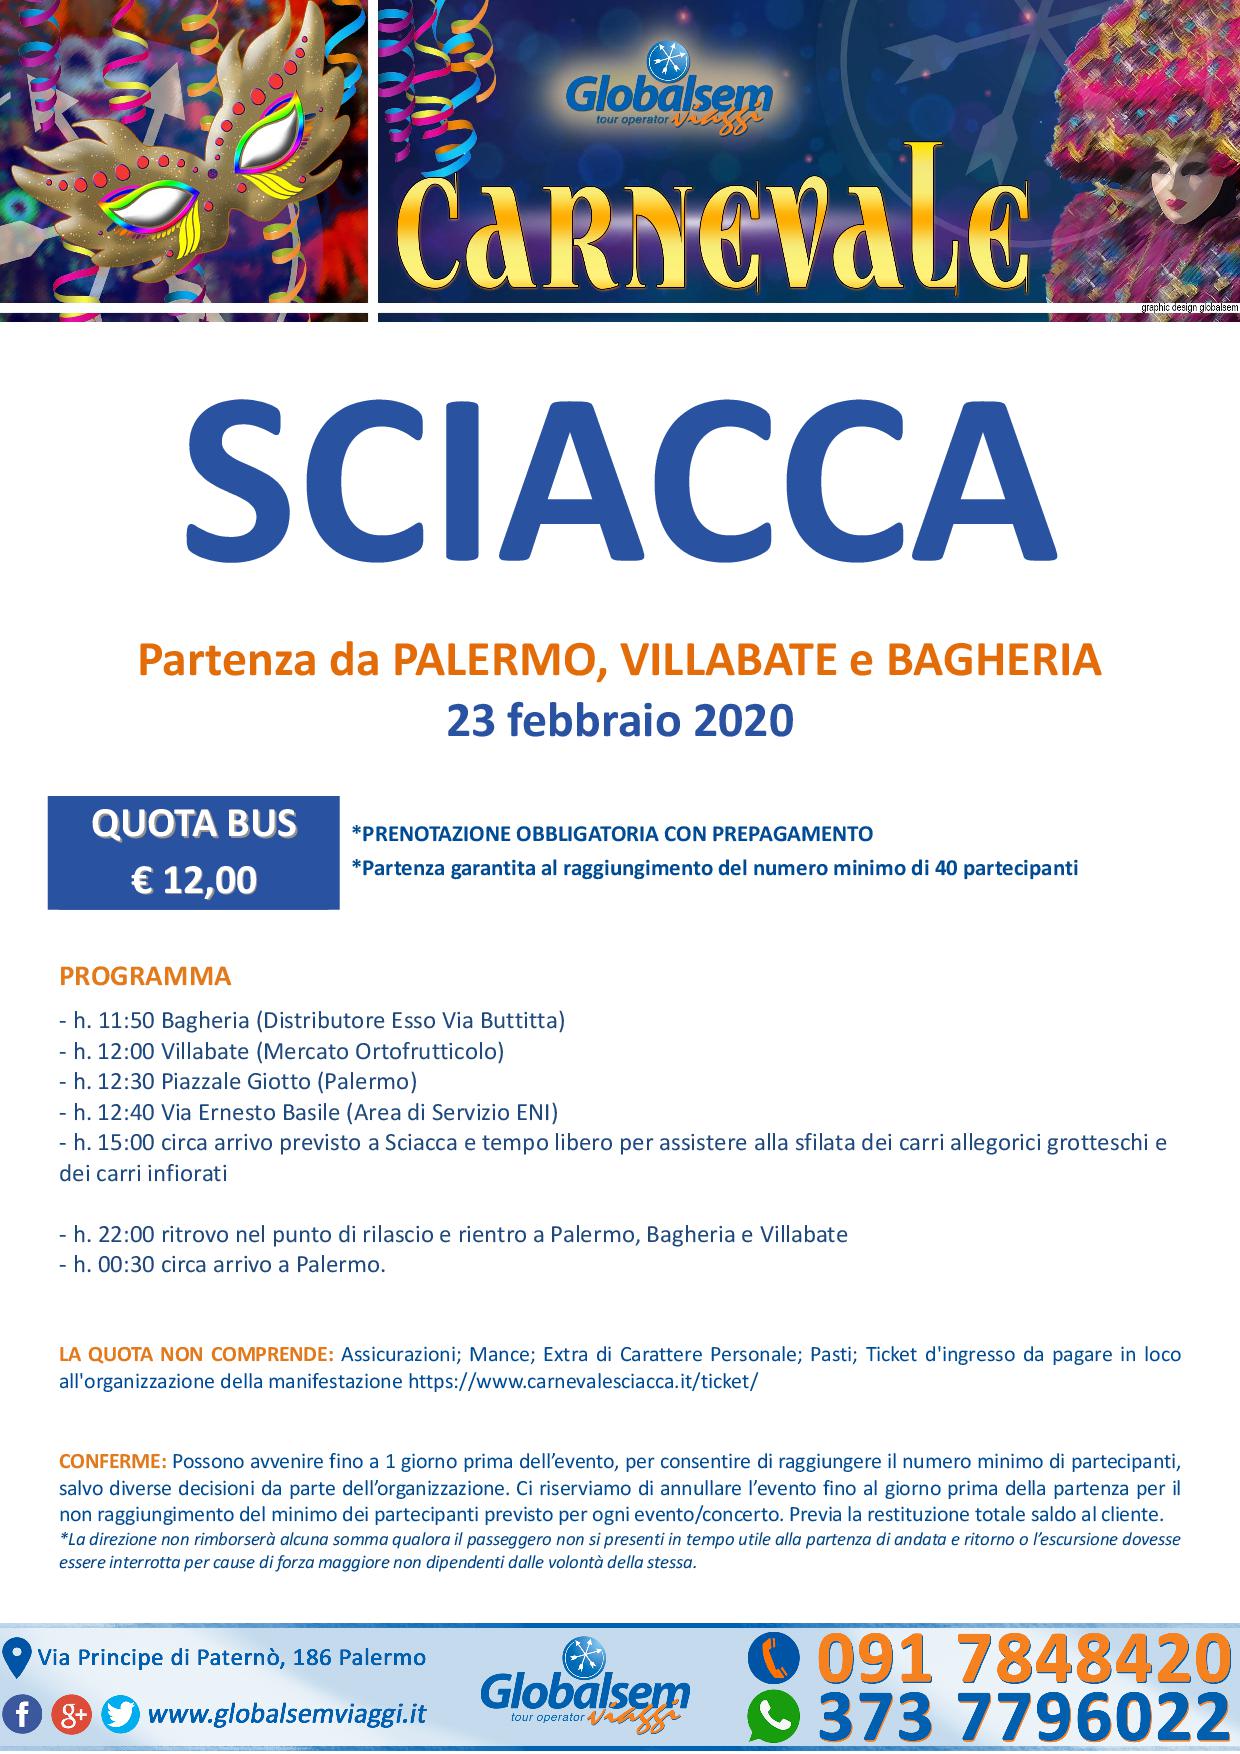 Carnevale a Sciacca in Pullman da Palermo il 23 febbraio 2020 ad € 12 a persona